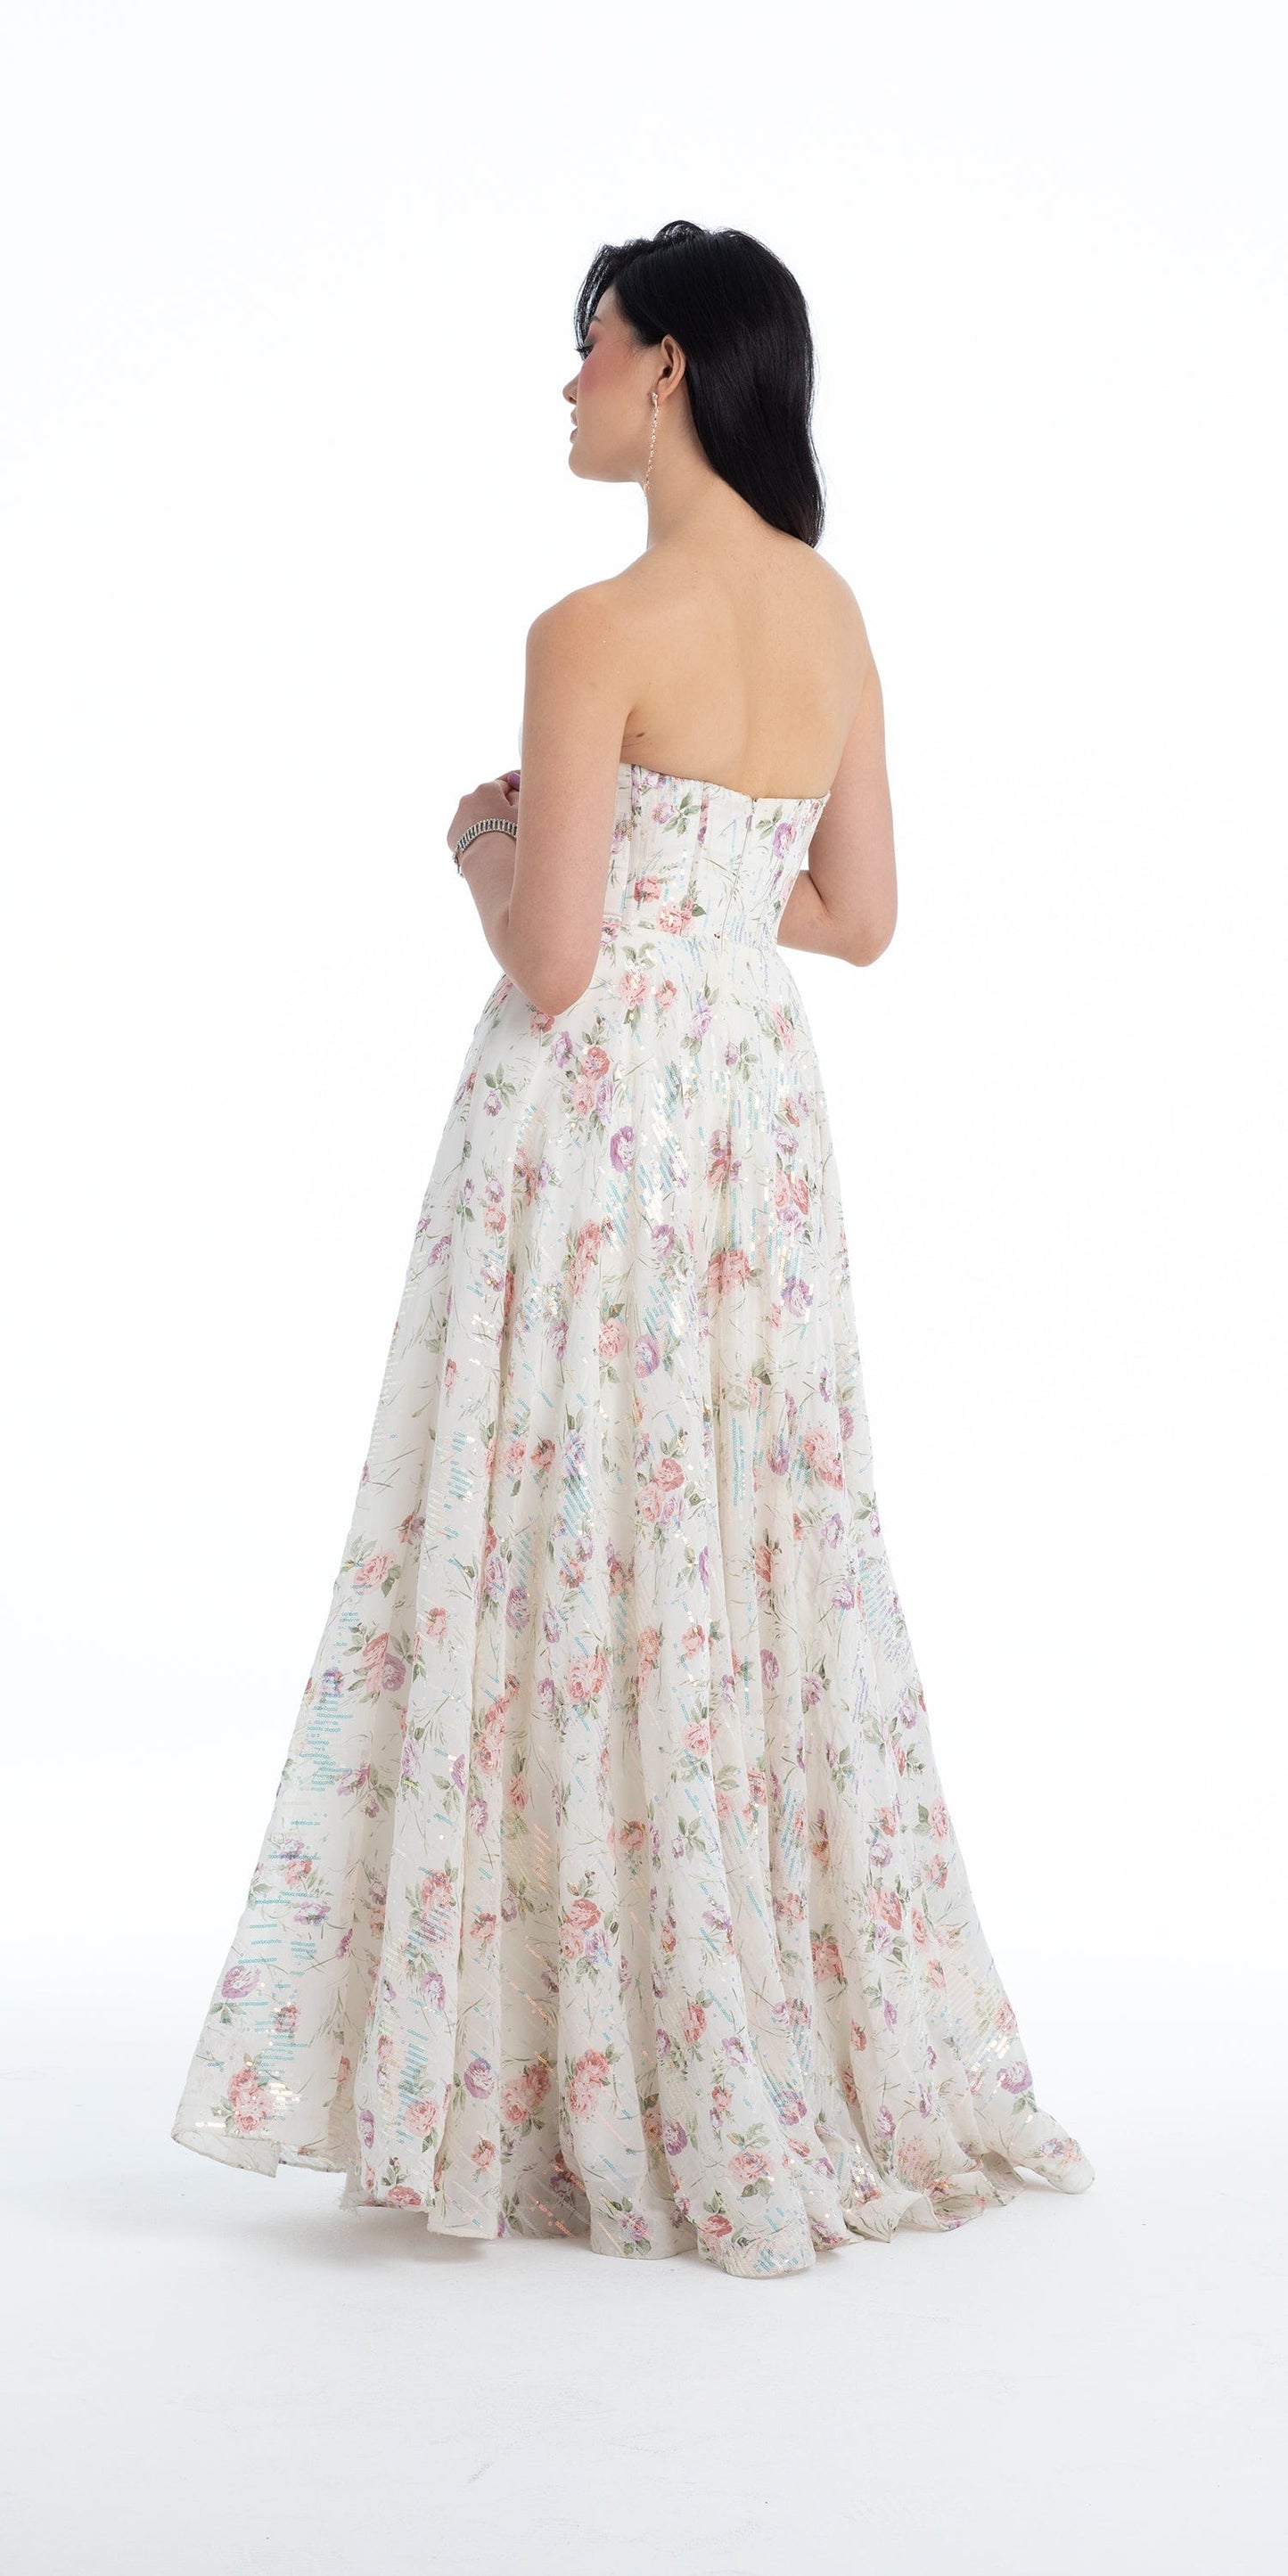 Camille La Vie Sequin Floral Corset A Line Dress